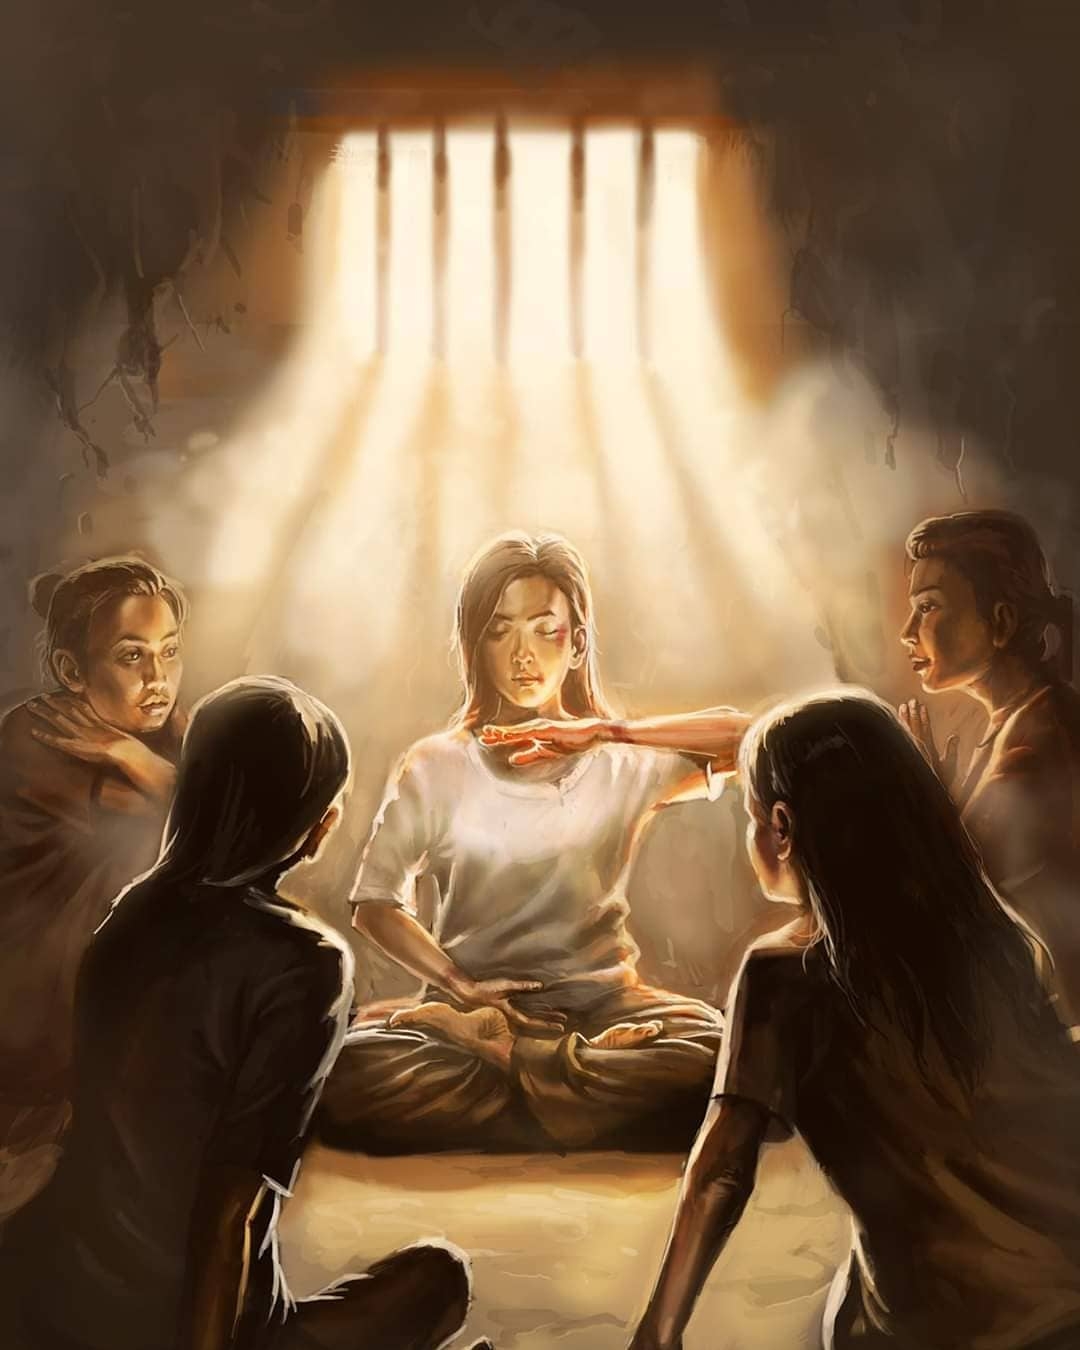 Image for article Falun Dafa Mahkumlara Daha İyi Biri Olmak İstemeleri İçin İlham Veriyor